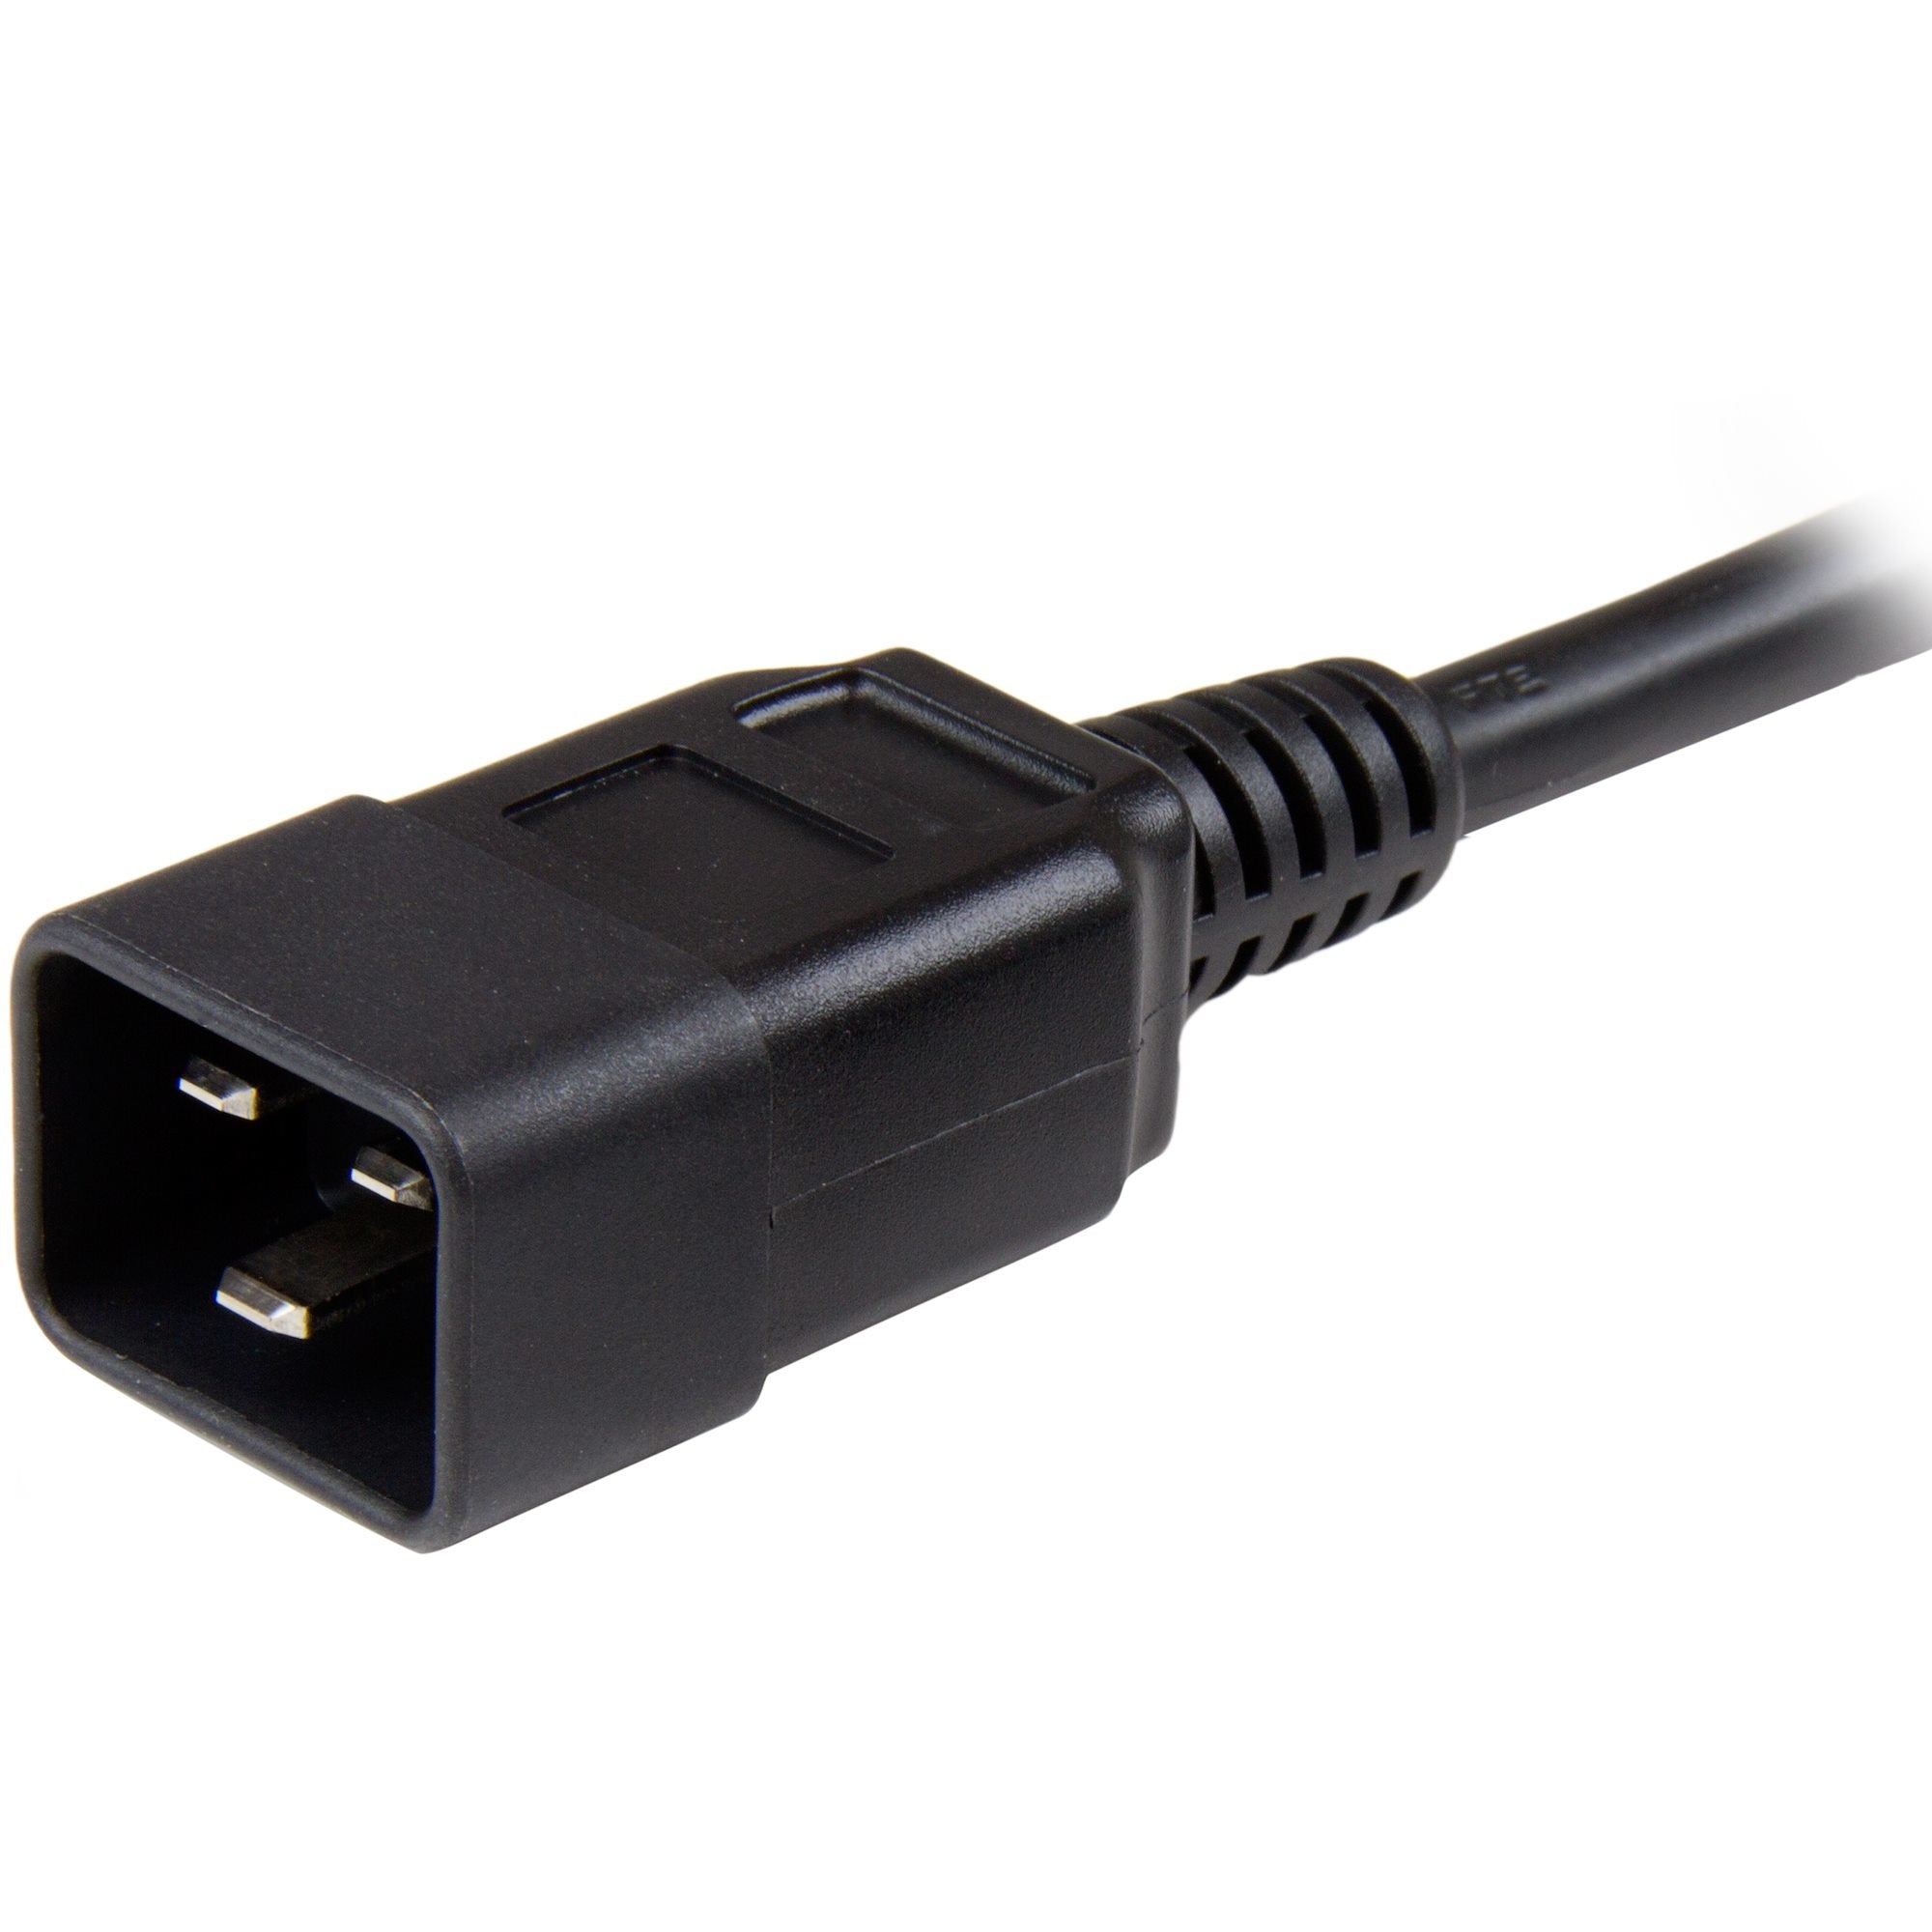 Cable De Corriente De 1.8M De Extension - C13 A C20 - 14Awg - 15A 125V - De Servicio Pesado - Cable De Alimentacion - Startech.Com Mod. Pxtc13C20146